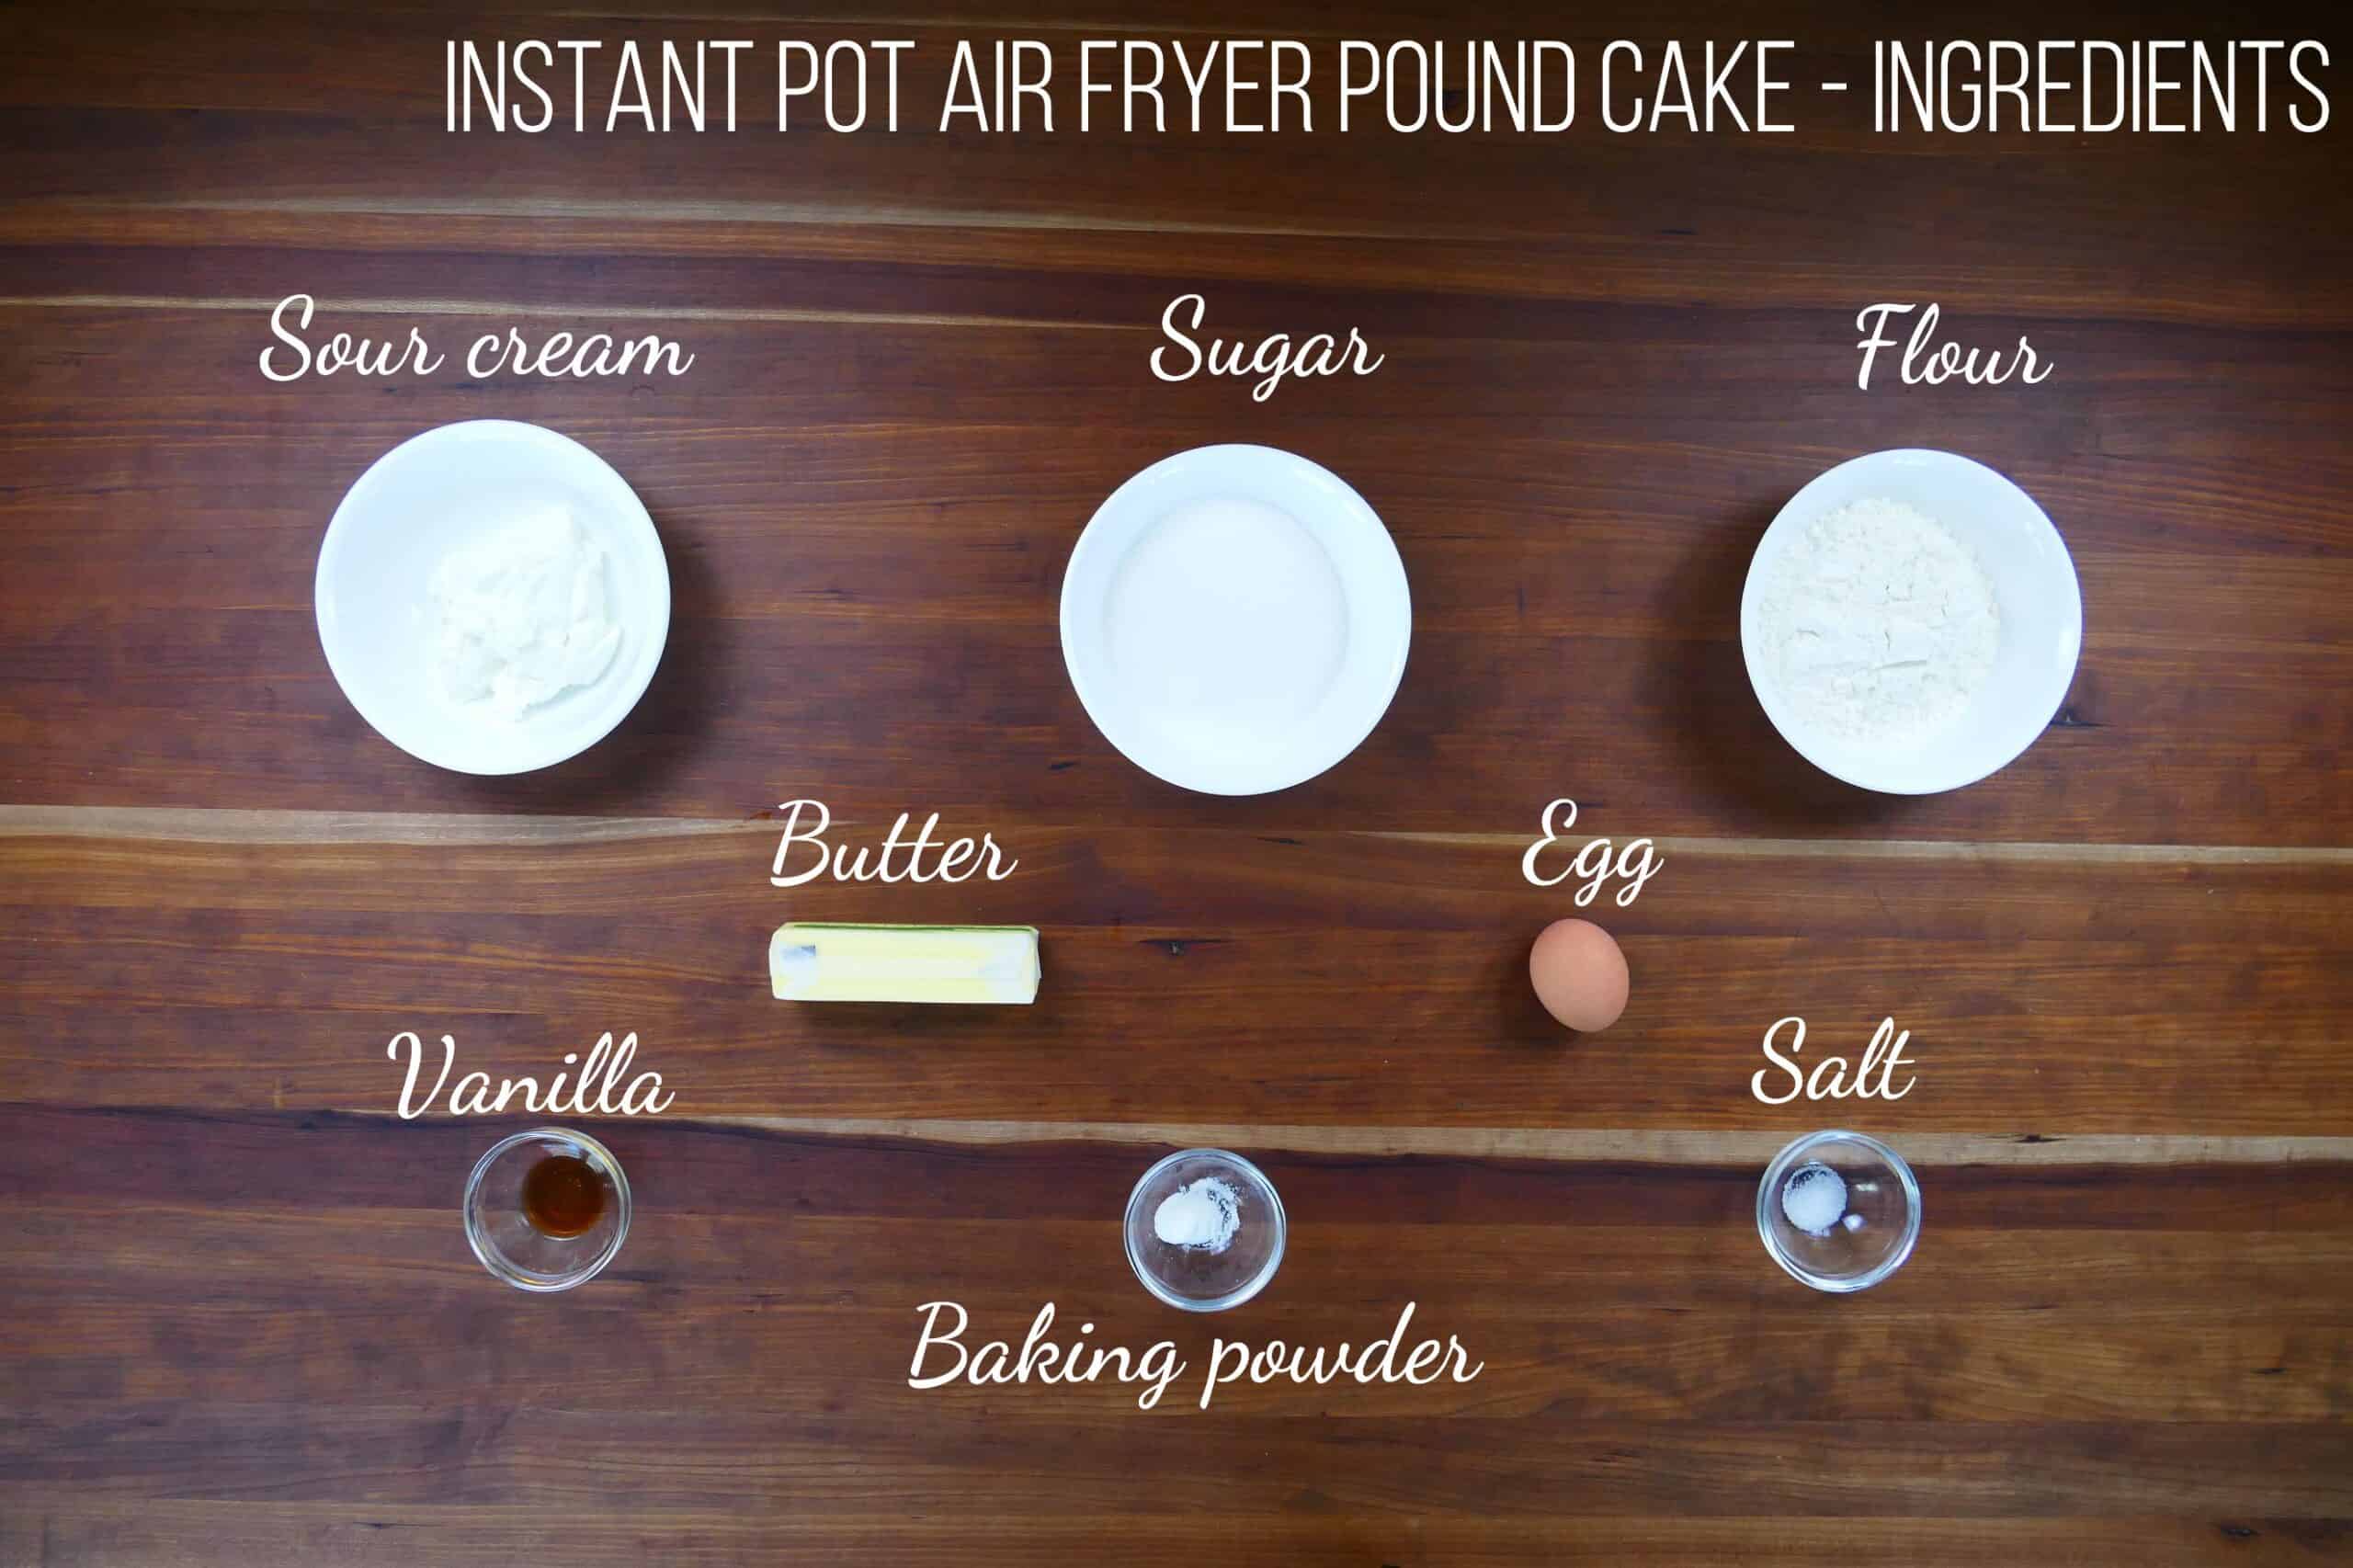 Instant Pot Air Fryer Pound Cake Ingredients - sour cream, sugar, flour, butter, egg, vanilla, baking powder, salt